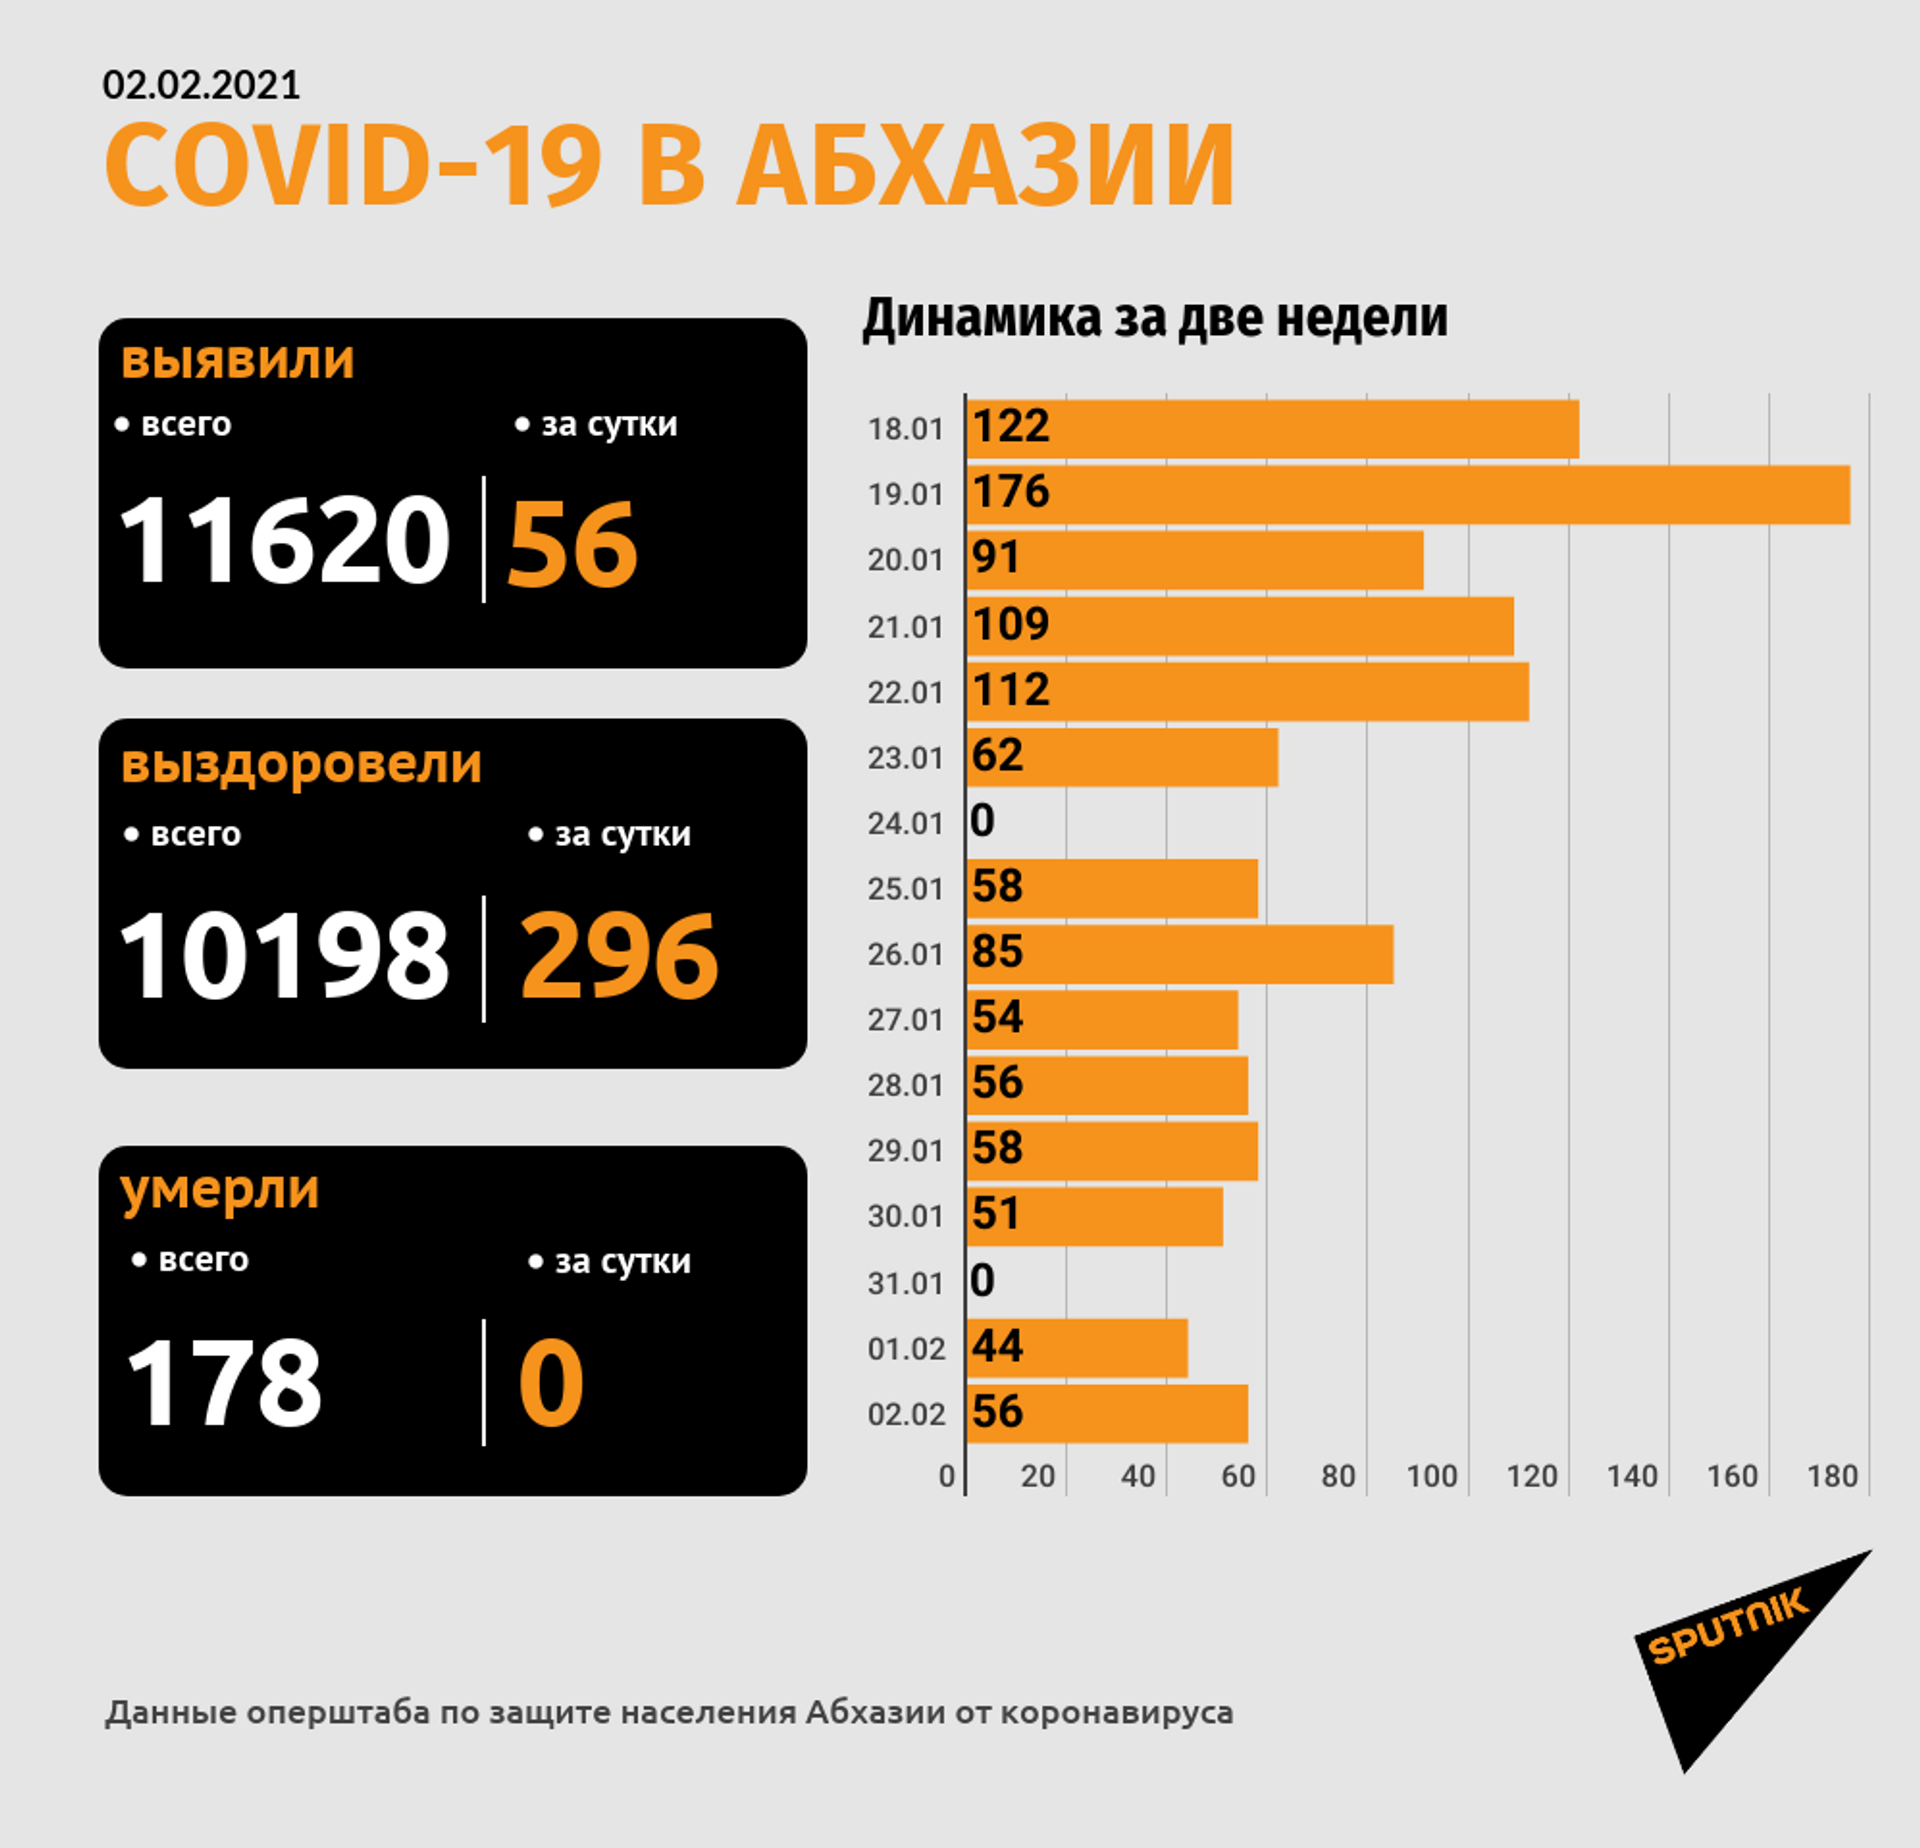 Коронавирус выявлен у 56 человек из более 500 проверенных в Абхазии за сутки - Sputnik Абхазия, 1920, 02.02.2021